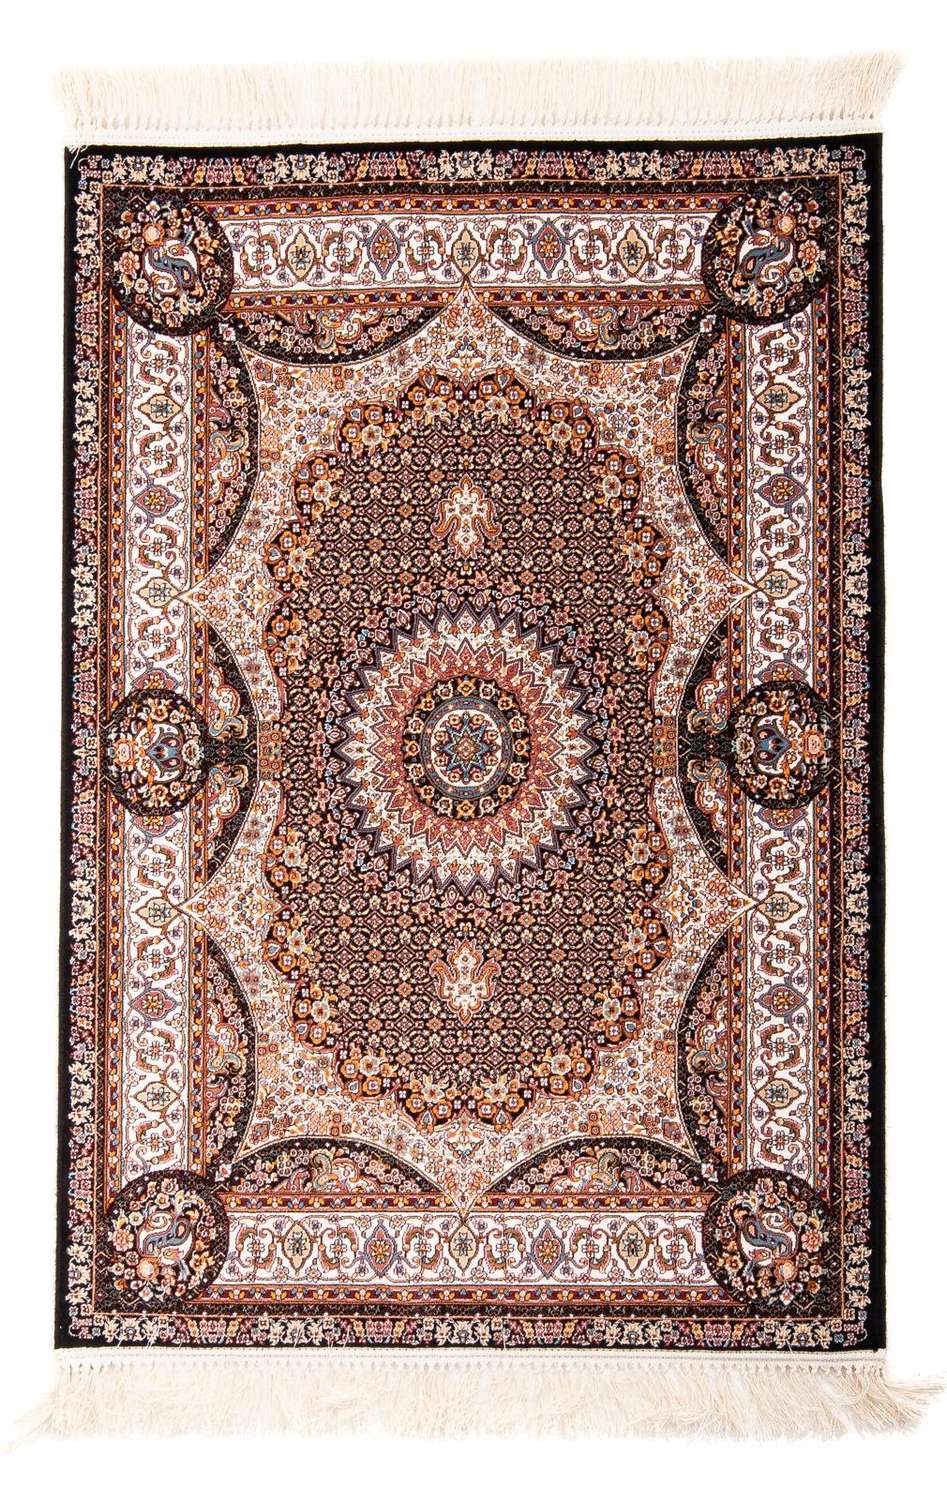 Orientální koberec - Aras - obdélníkový